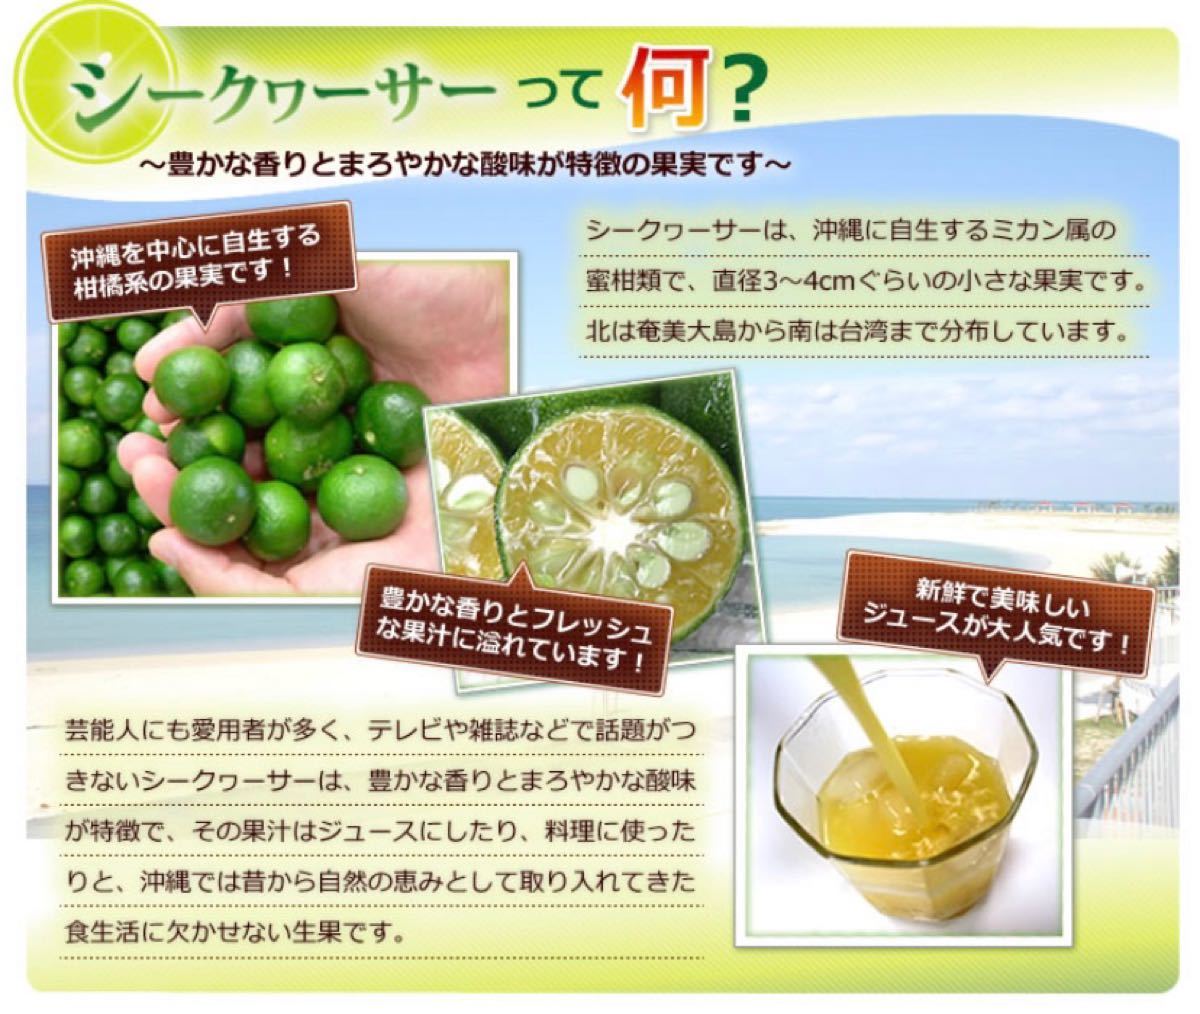 沖縄産シークワーサー100%果汁(500ml)の3本セット